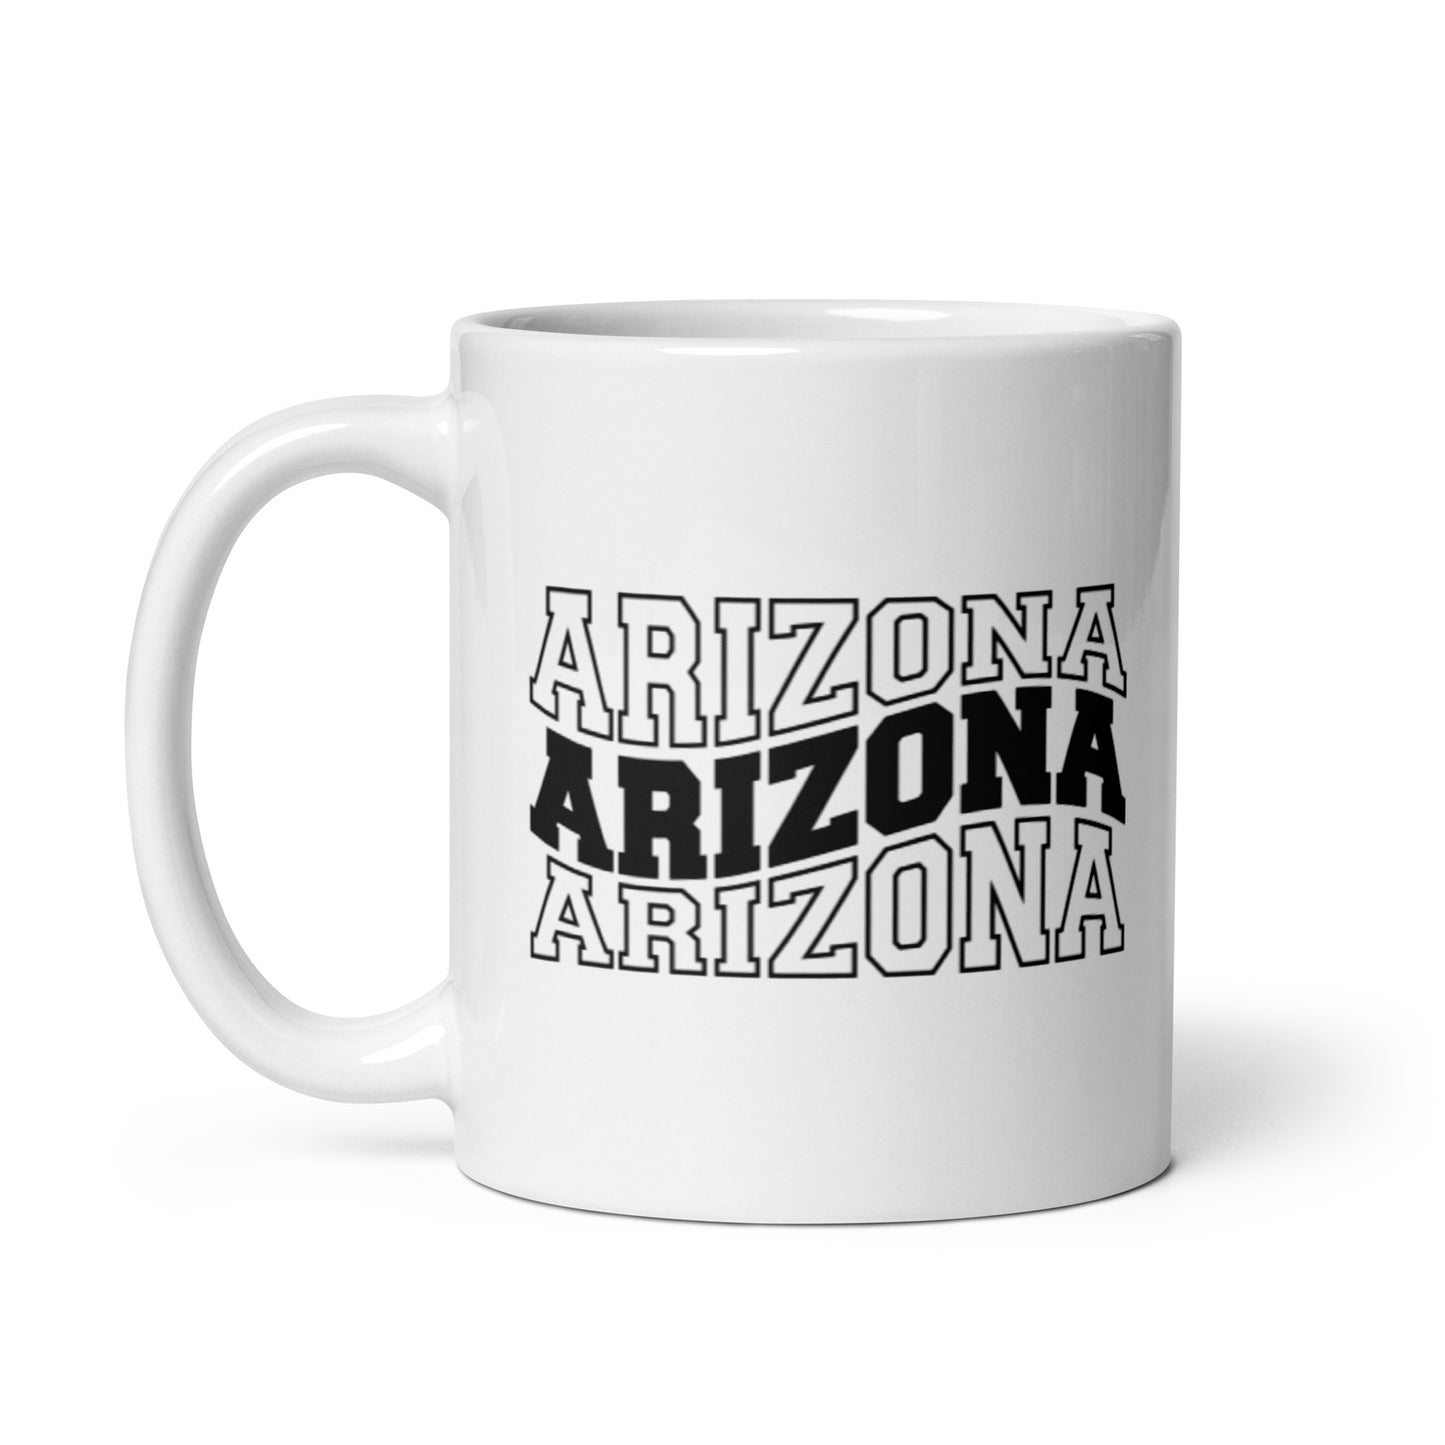 Arizona White glossy mug